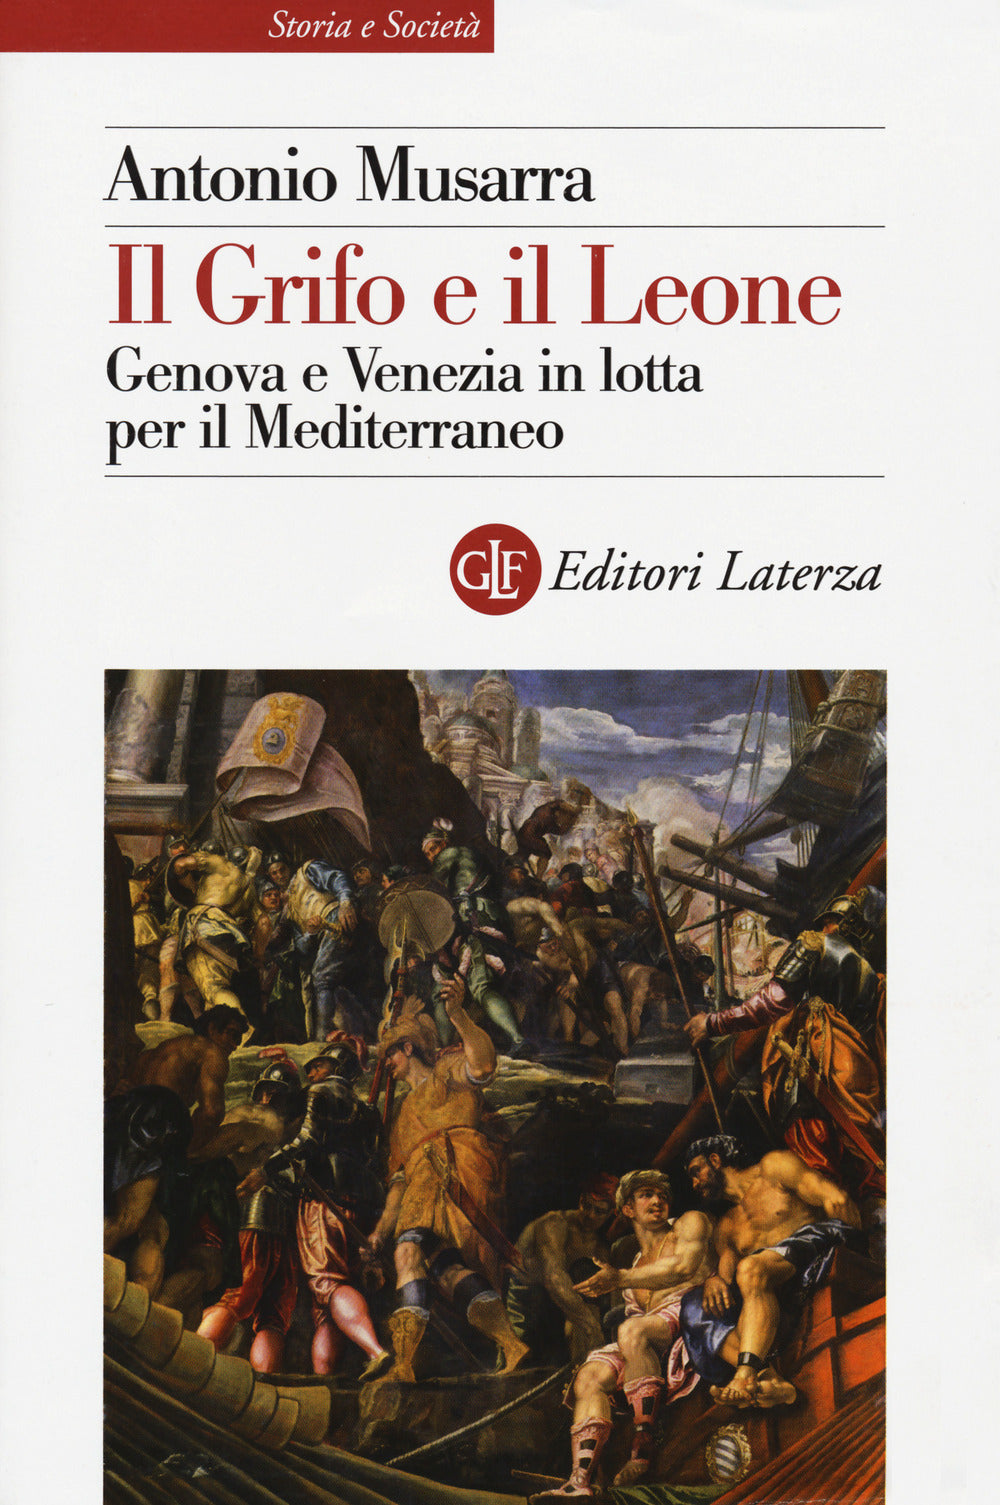 Il grifo e il leone. Genova e Venezia in lotta per il Mediterraneo.